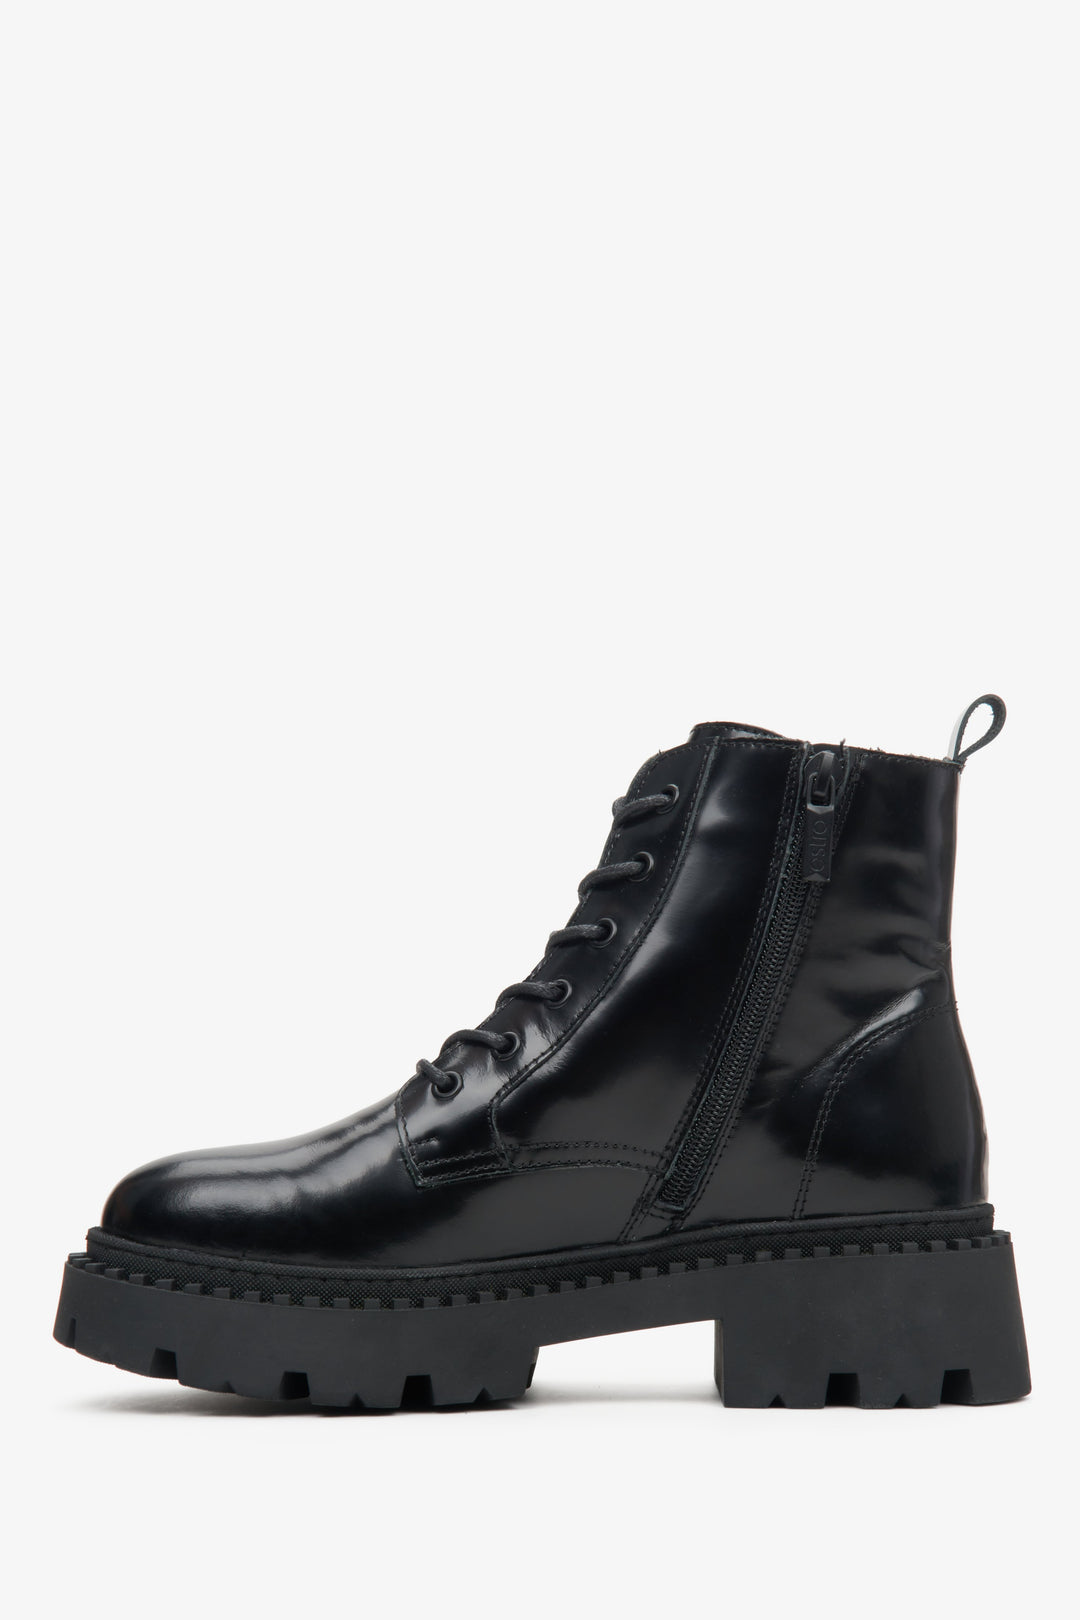 Damskie, skórzane buty w kolorze czarnym Estro - profil buta.